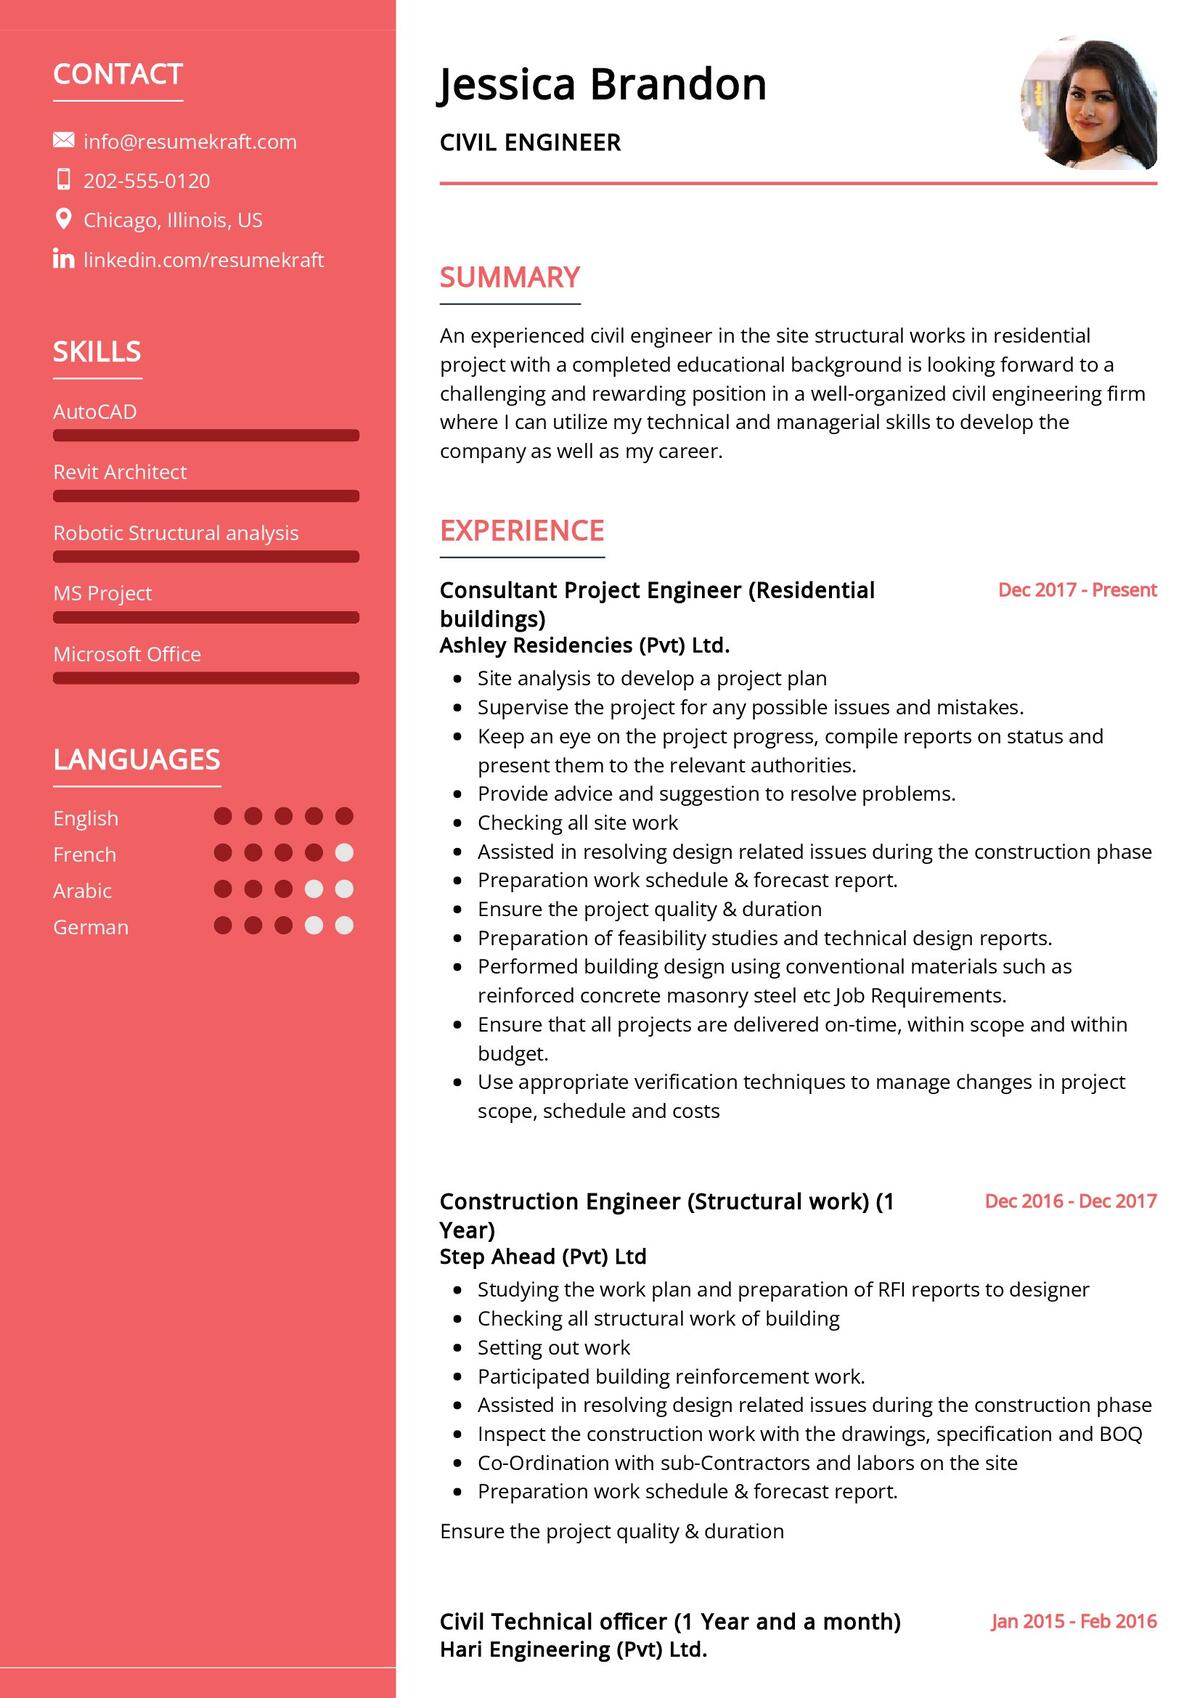 Civil Engineer CV Example in 2024 ResumeKraft